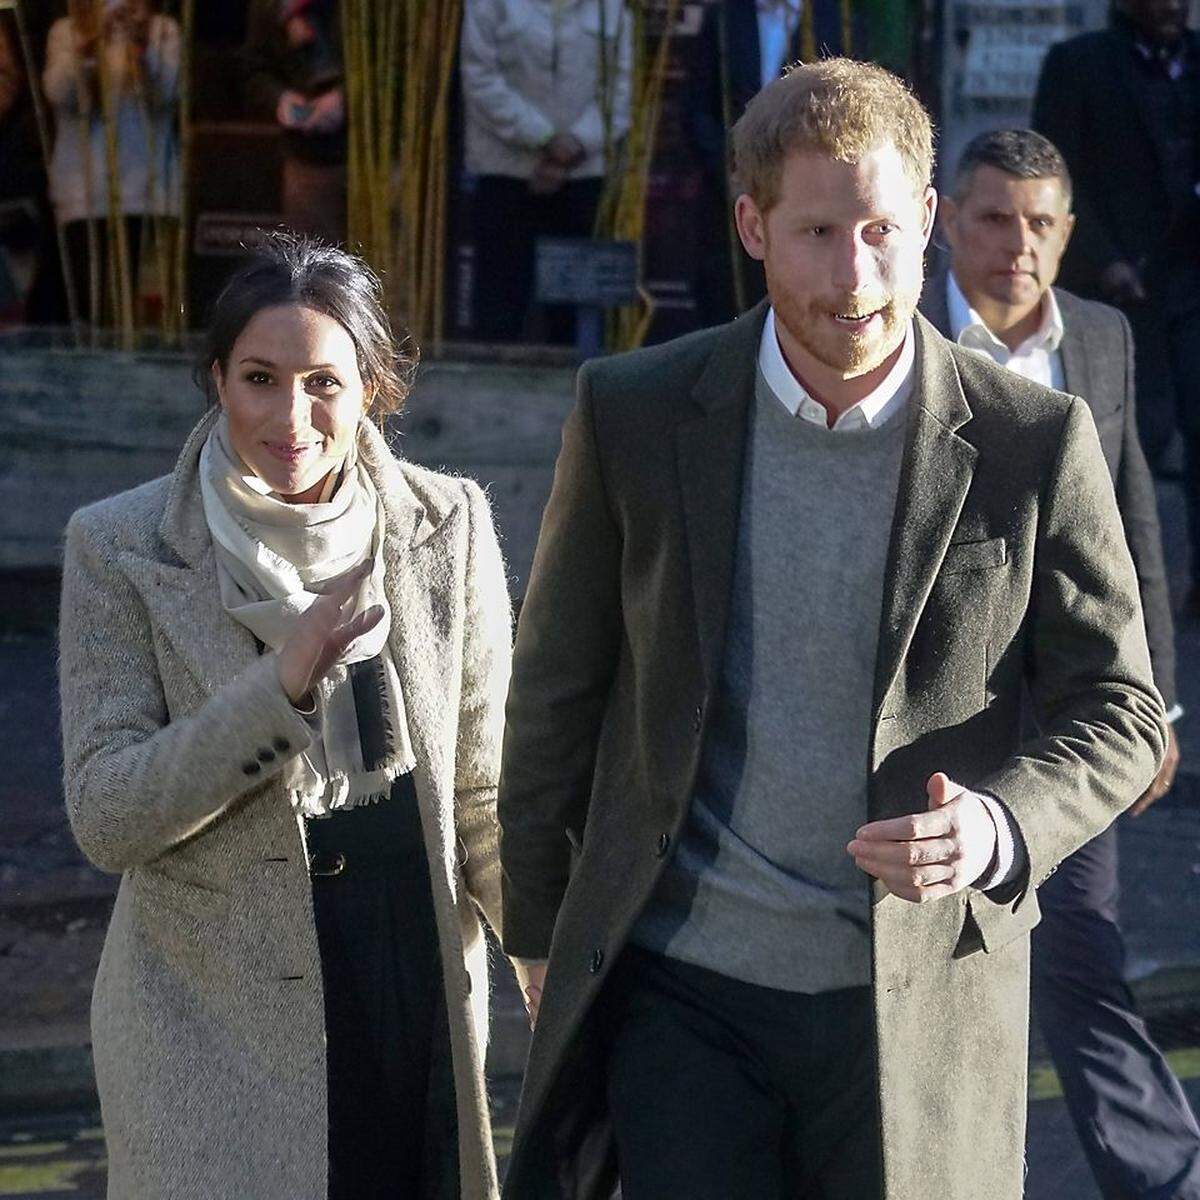 Und auch dieses Paar könnte 2018 nach der Hochzeit noch eins draufsetzen: Englische Royal-Reporter halten es durchaus für möglich, dass Prinz Harry und Meghan Markle noch dieses Jahr eine erste Schwangerschaft verkünden könnten. Es bleibt spannend.